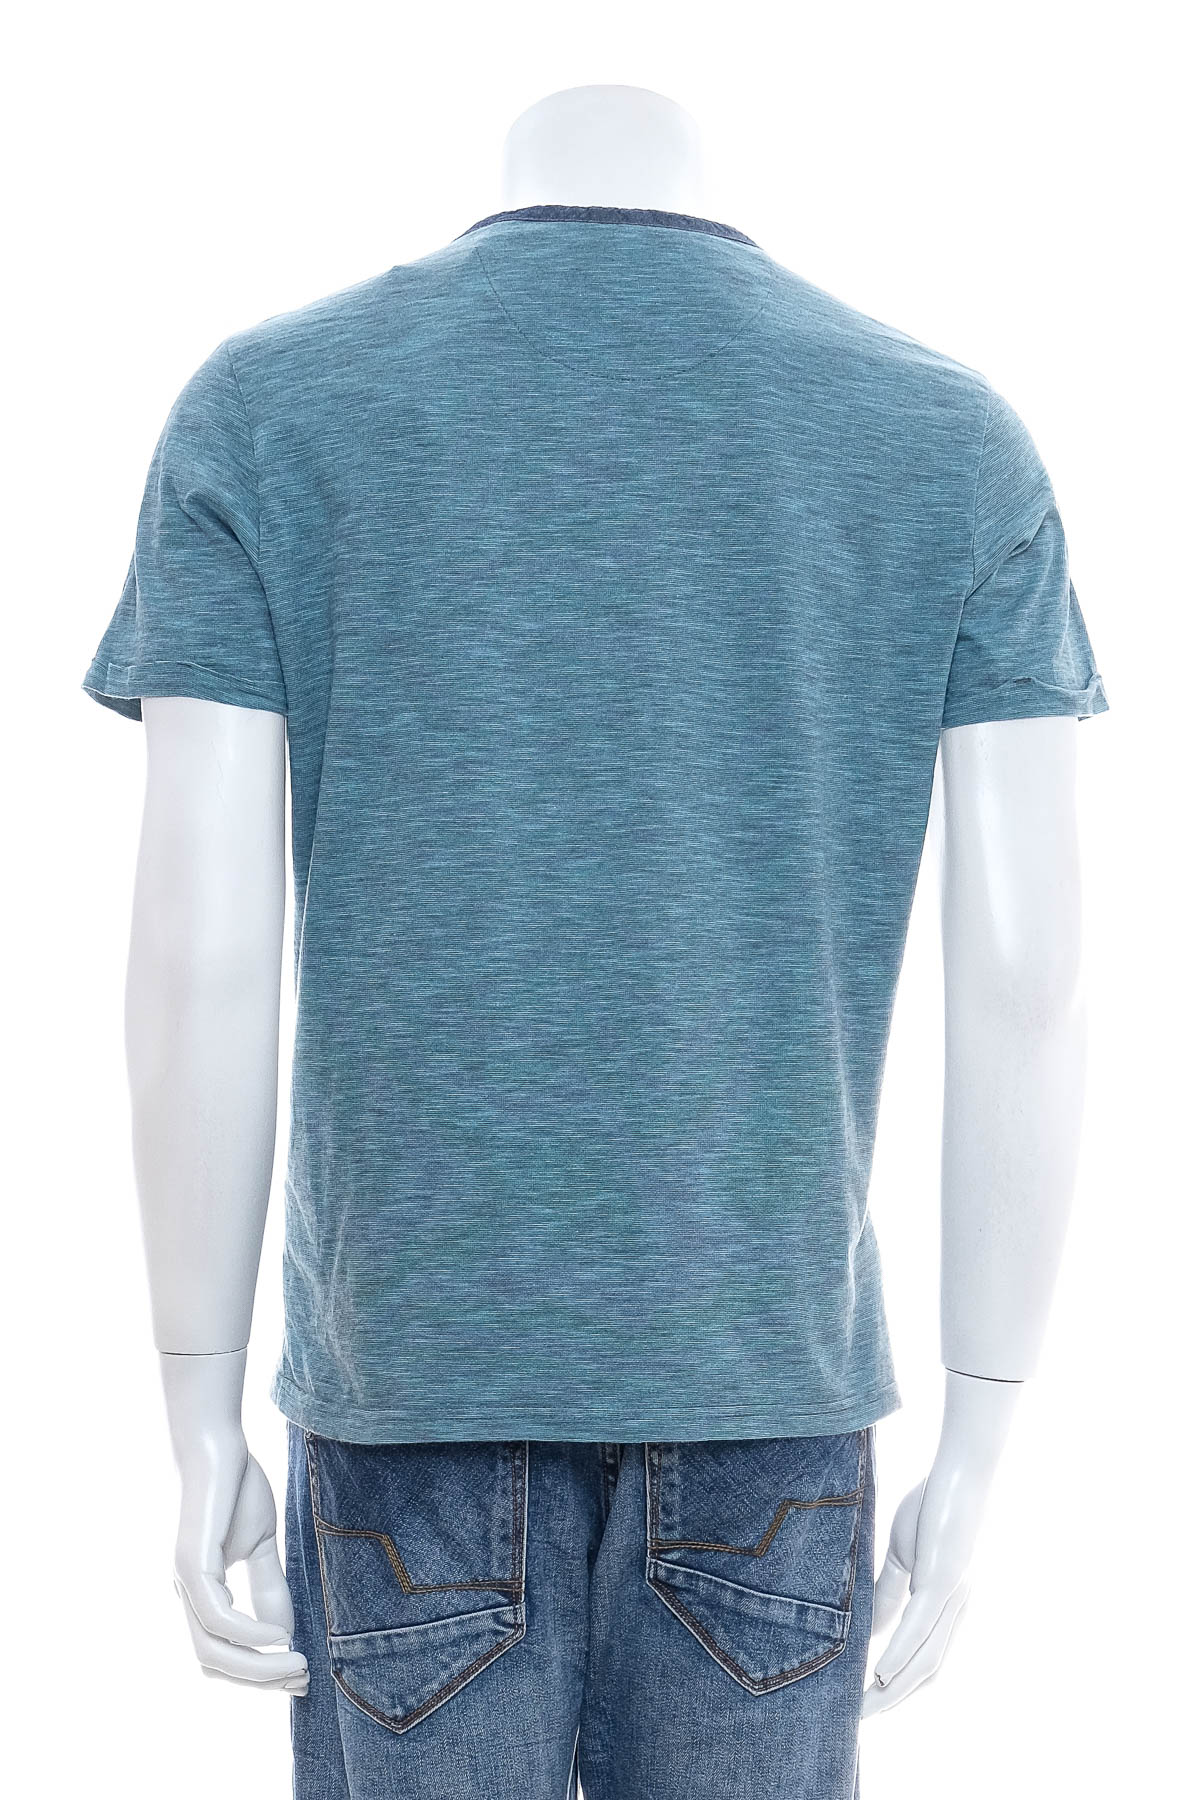 Men's T-shirt - TOM TAILOR - 1